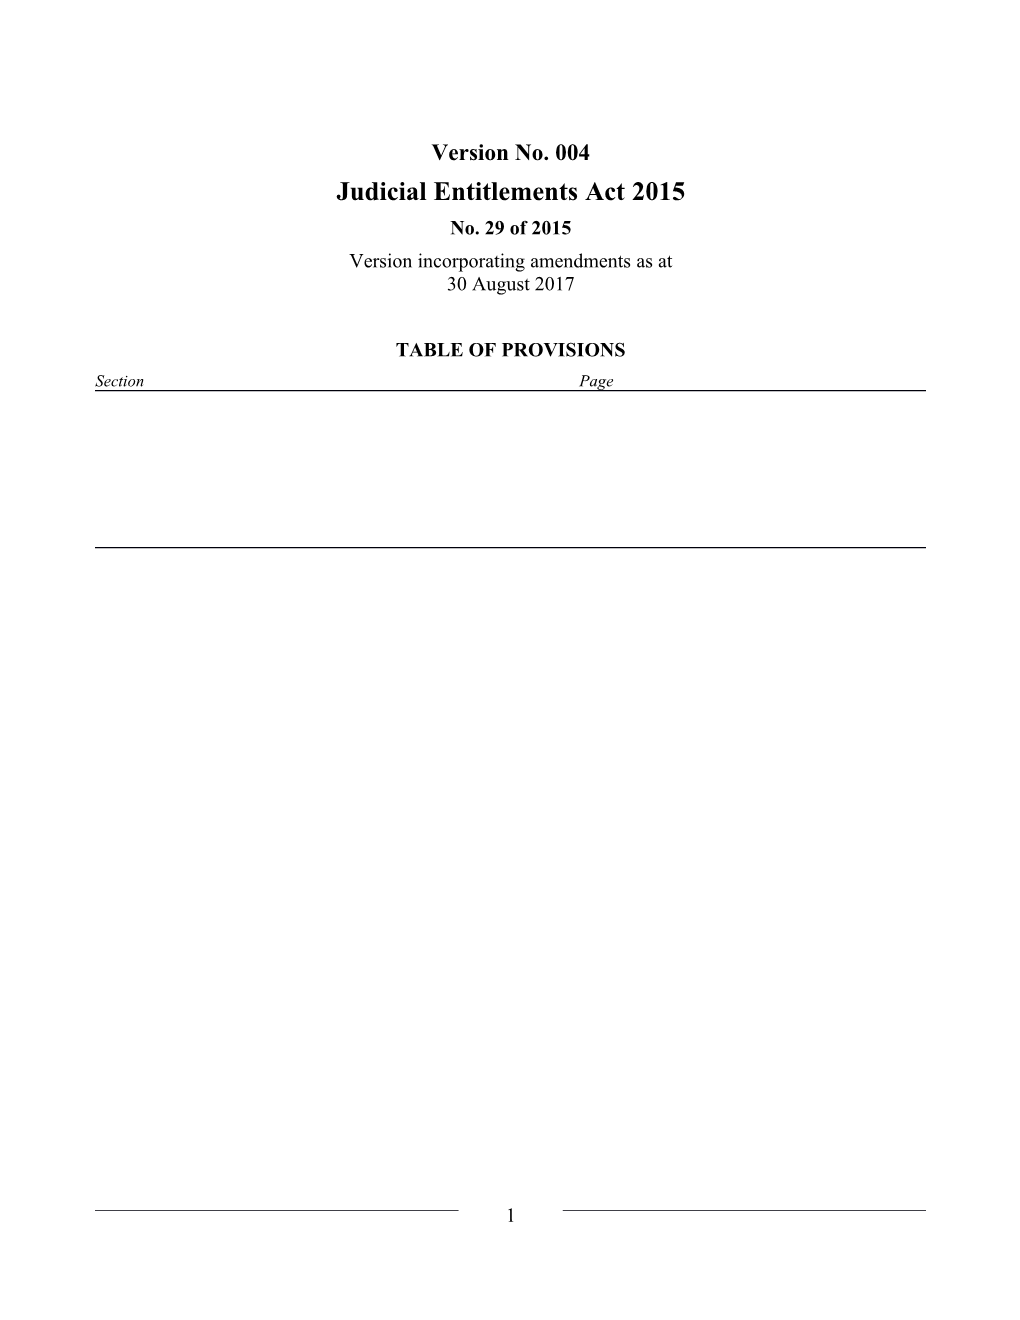 Judicial Entitlements Act 2015